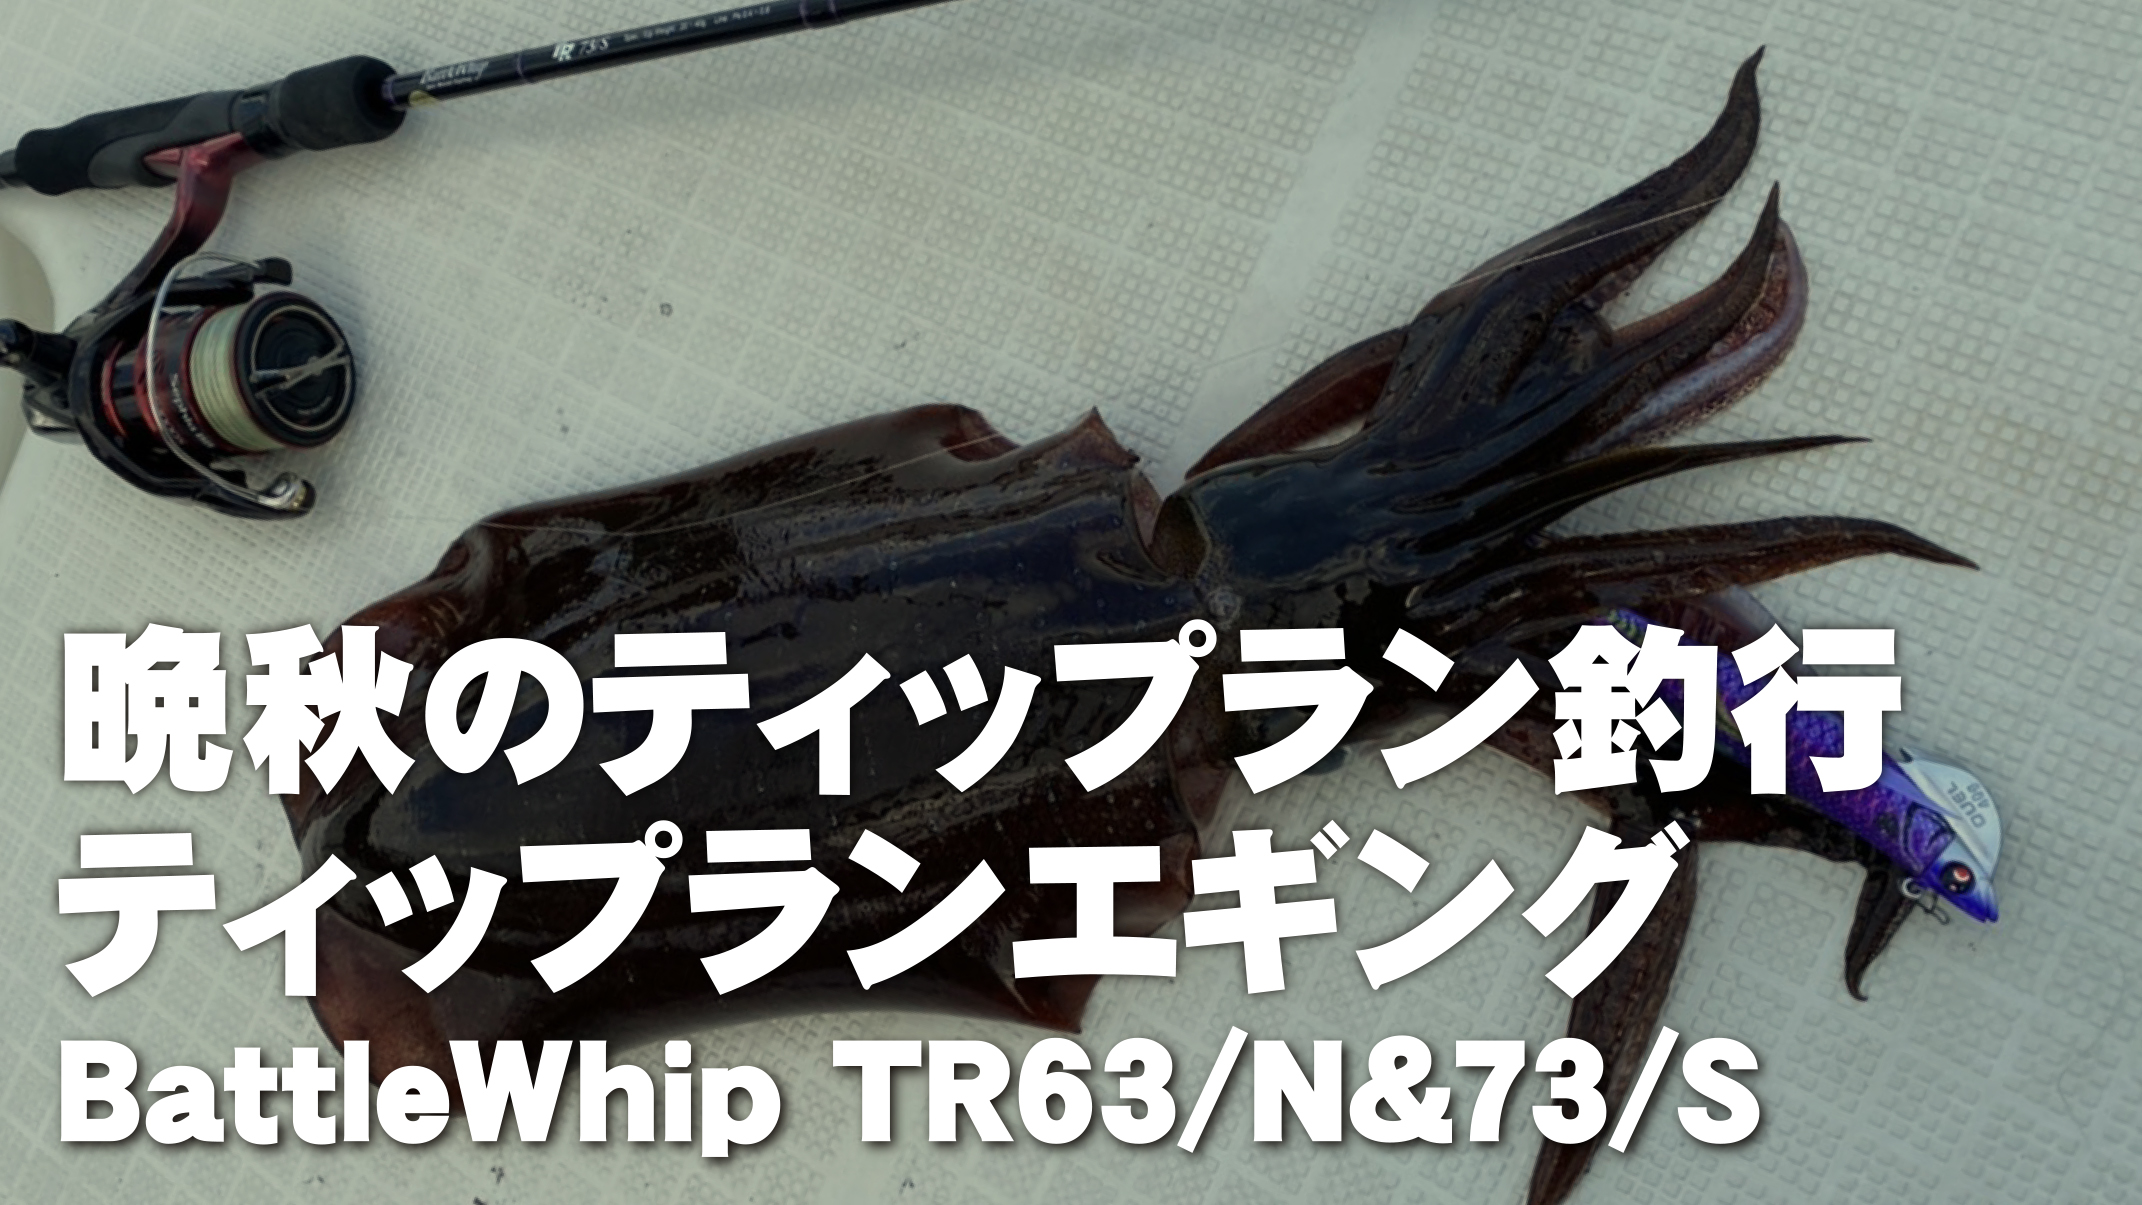 【フィールドスタッフレポート】『晩秋のティップラン釣行』BattleWhip TR63/N&73/S